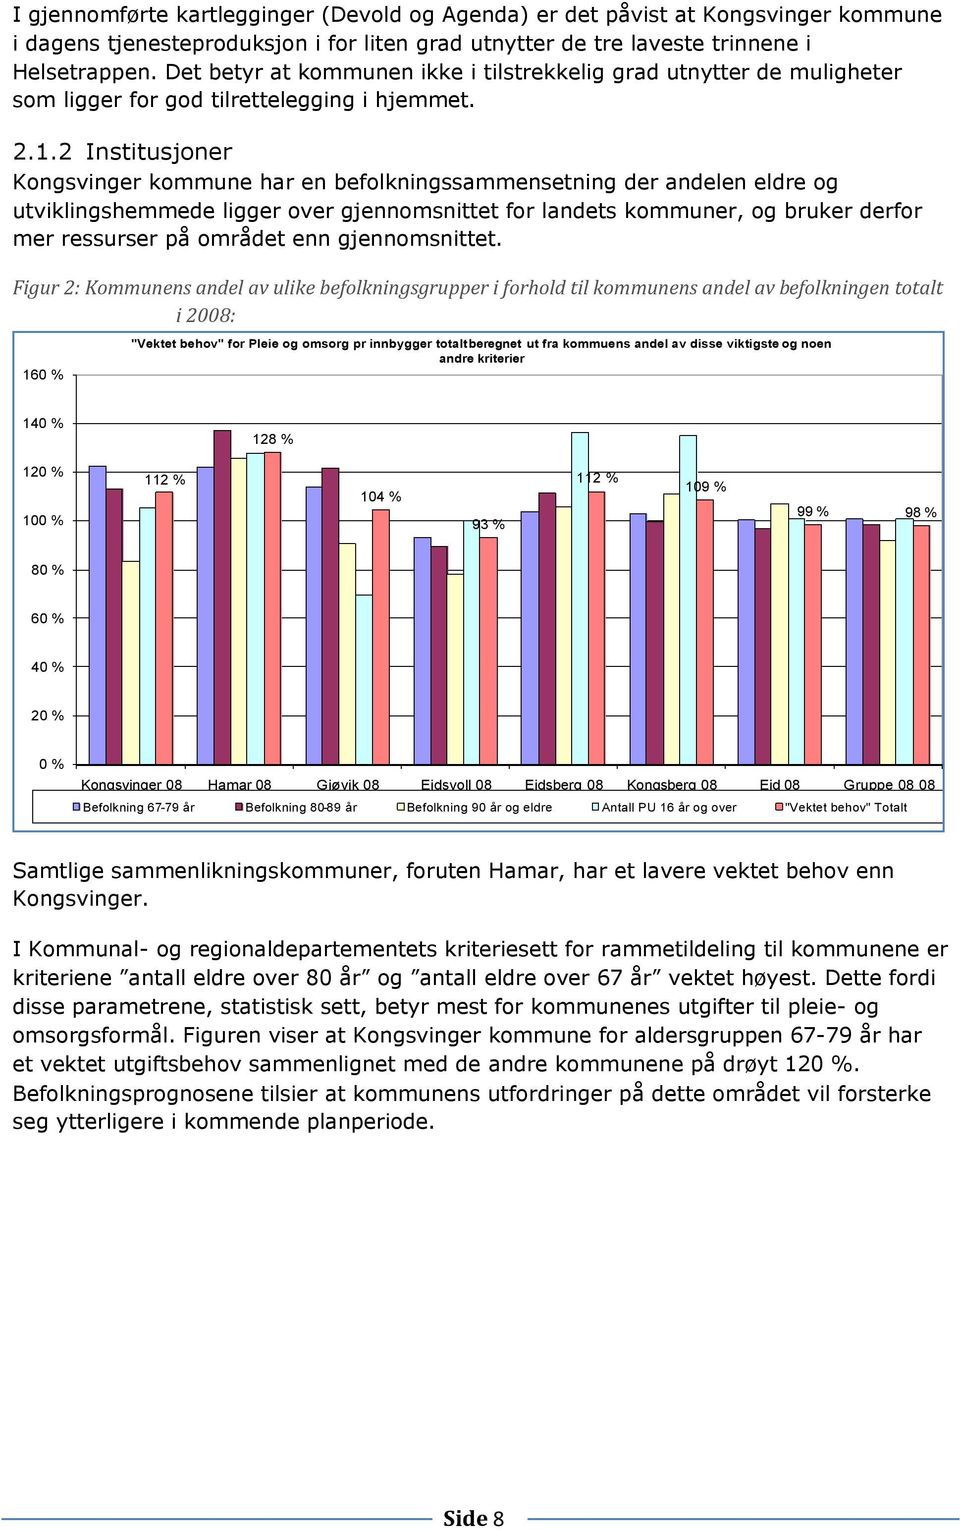 2 Institusjoner Kongsvinger kommune har en befolkningssammensetning der andelen eldre og utviklingshemmede ligger over gjennomsnittet for landets kommuner, og bruker derfor mer ressurser på området